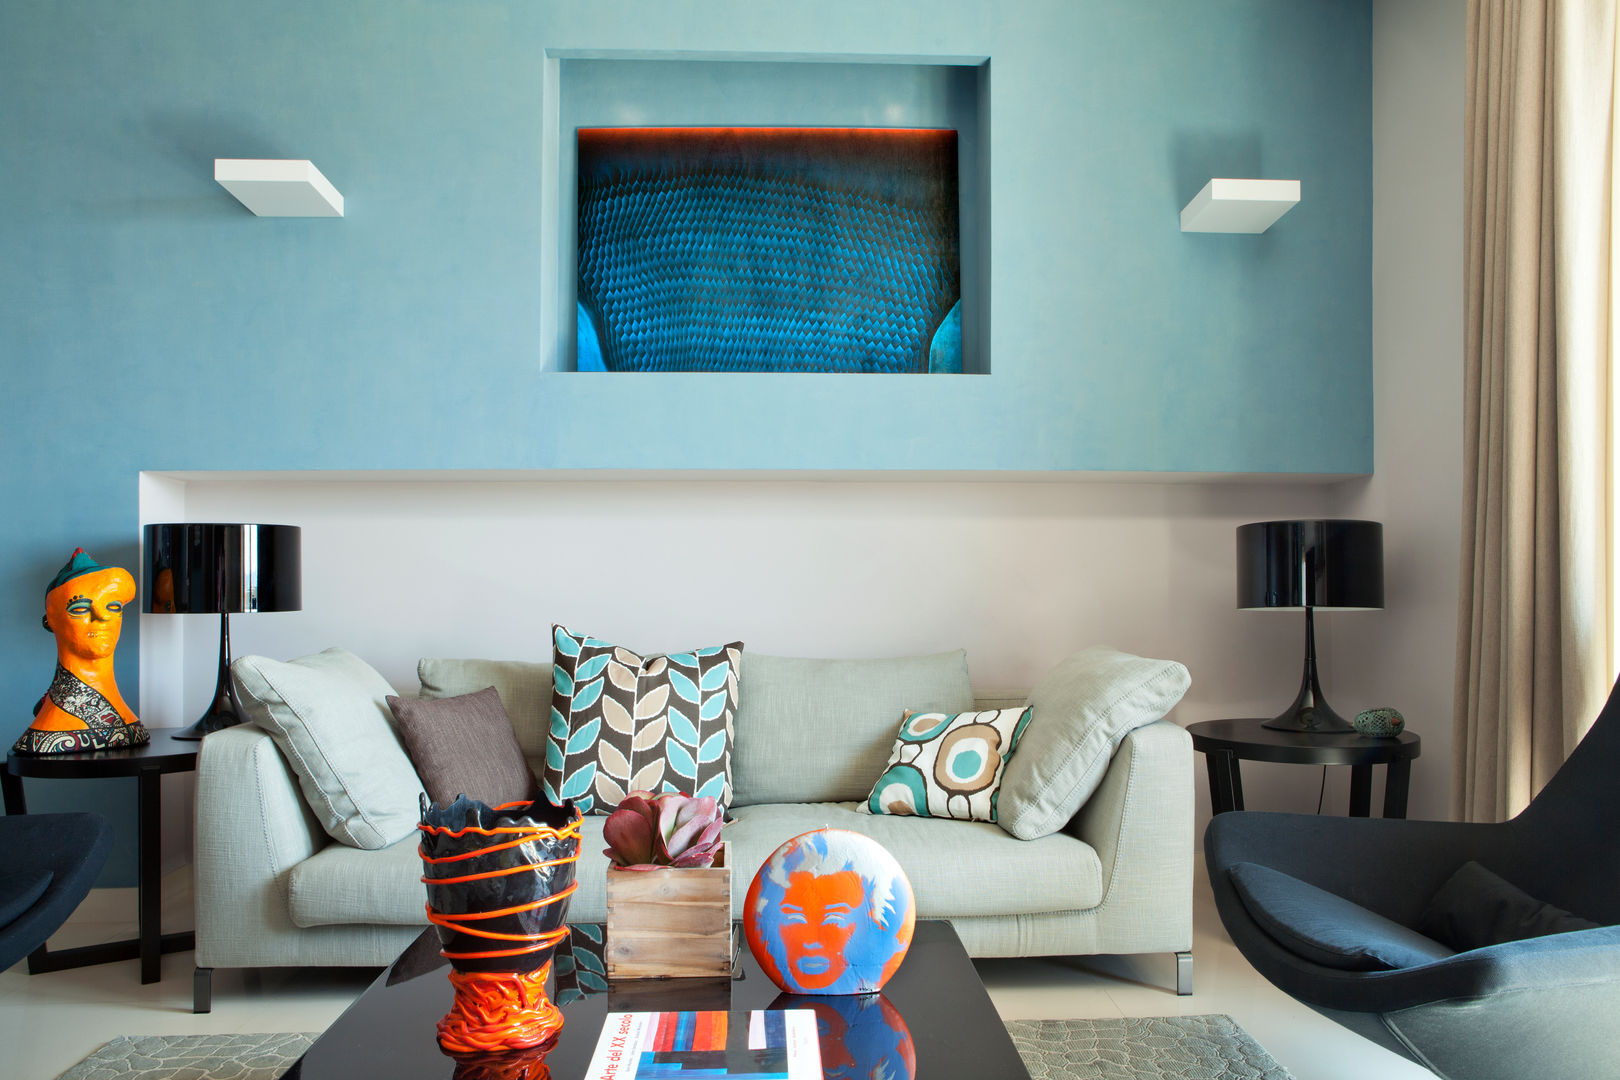 La casa ideale per un single, giovane e colorata, PDV studio di progettazione PDV studio di progettazione 客廳 沙發與扶手椅